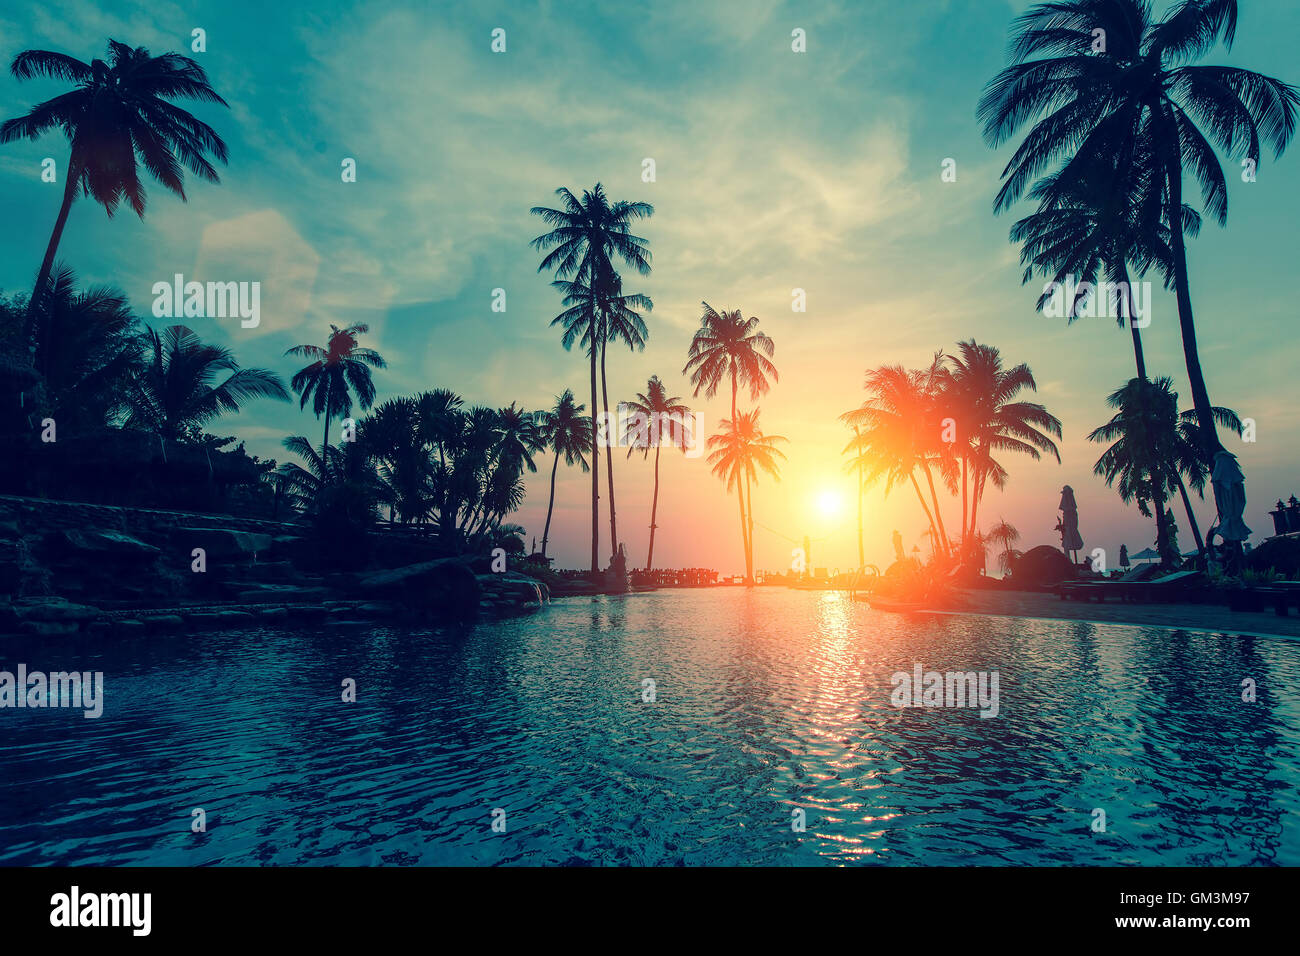 Fantastico tramonto e le palme in spiaggia tropicale. Foto Stock